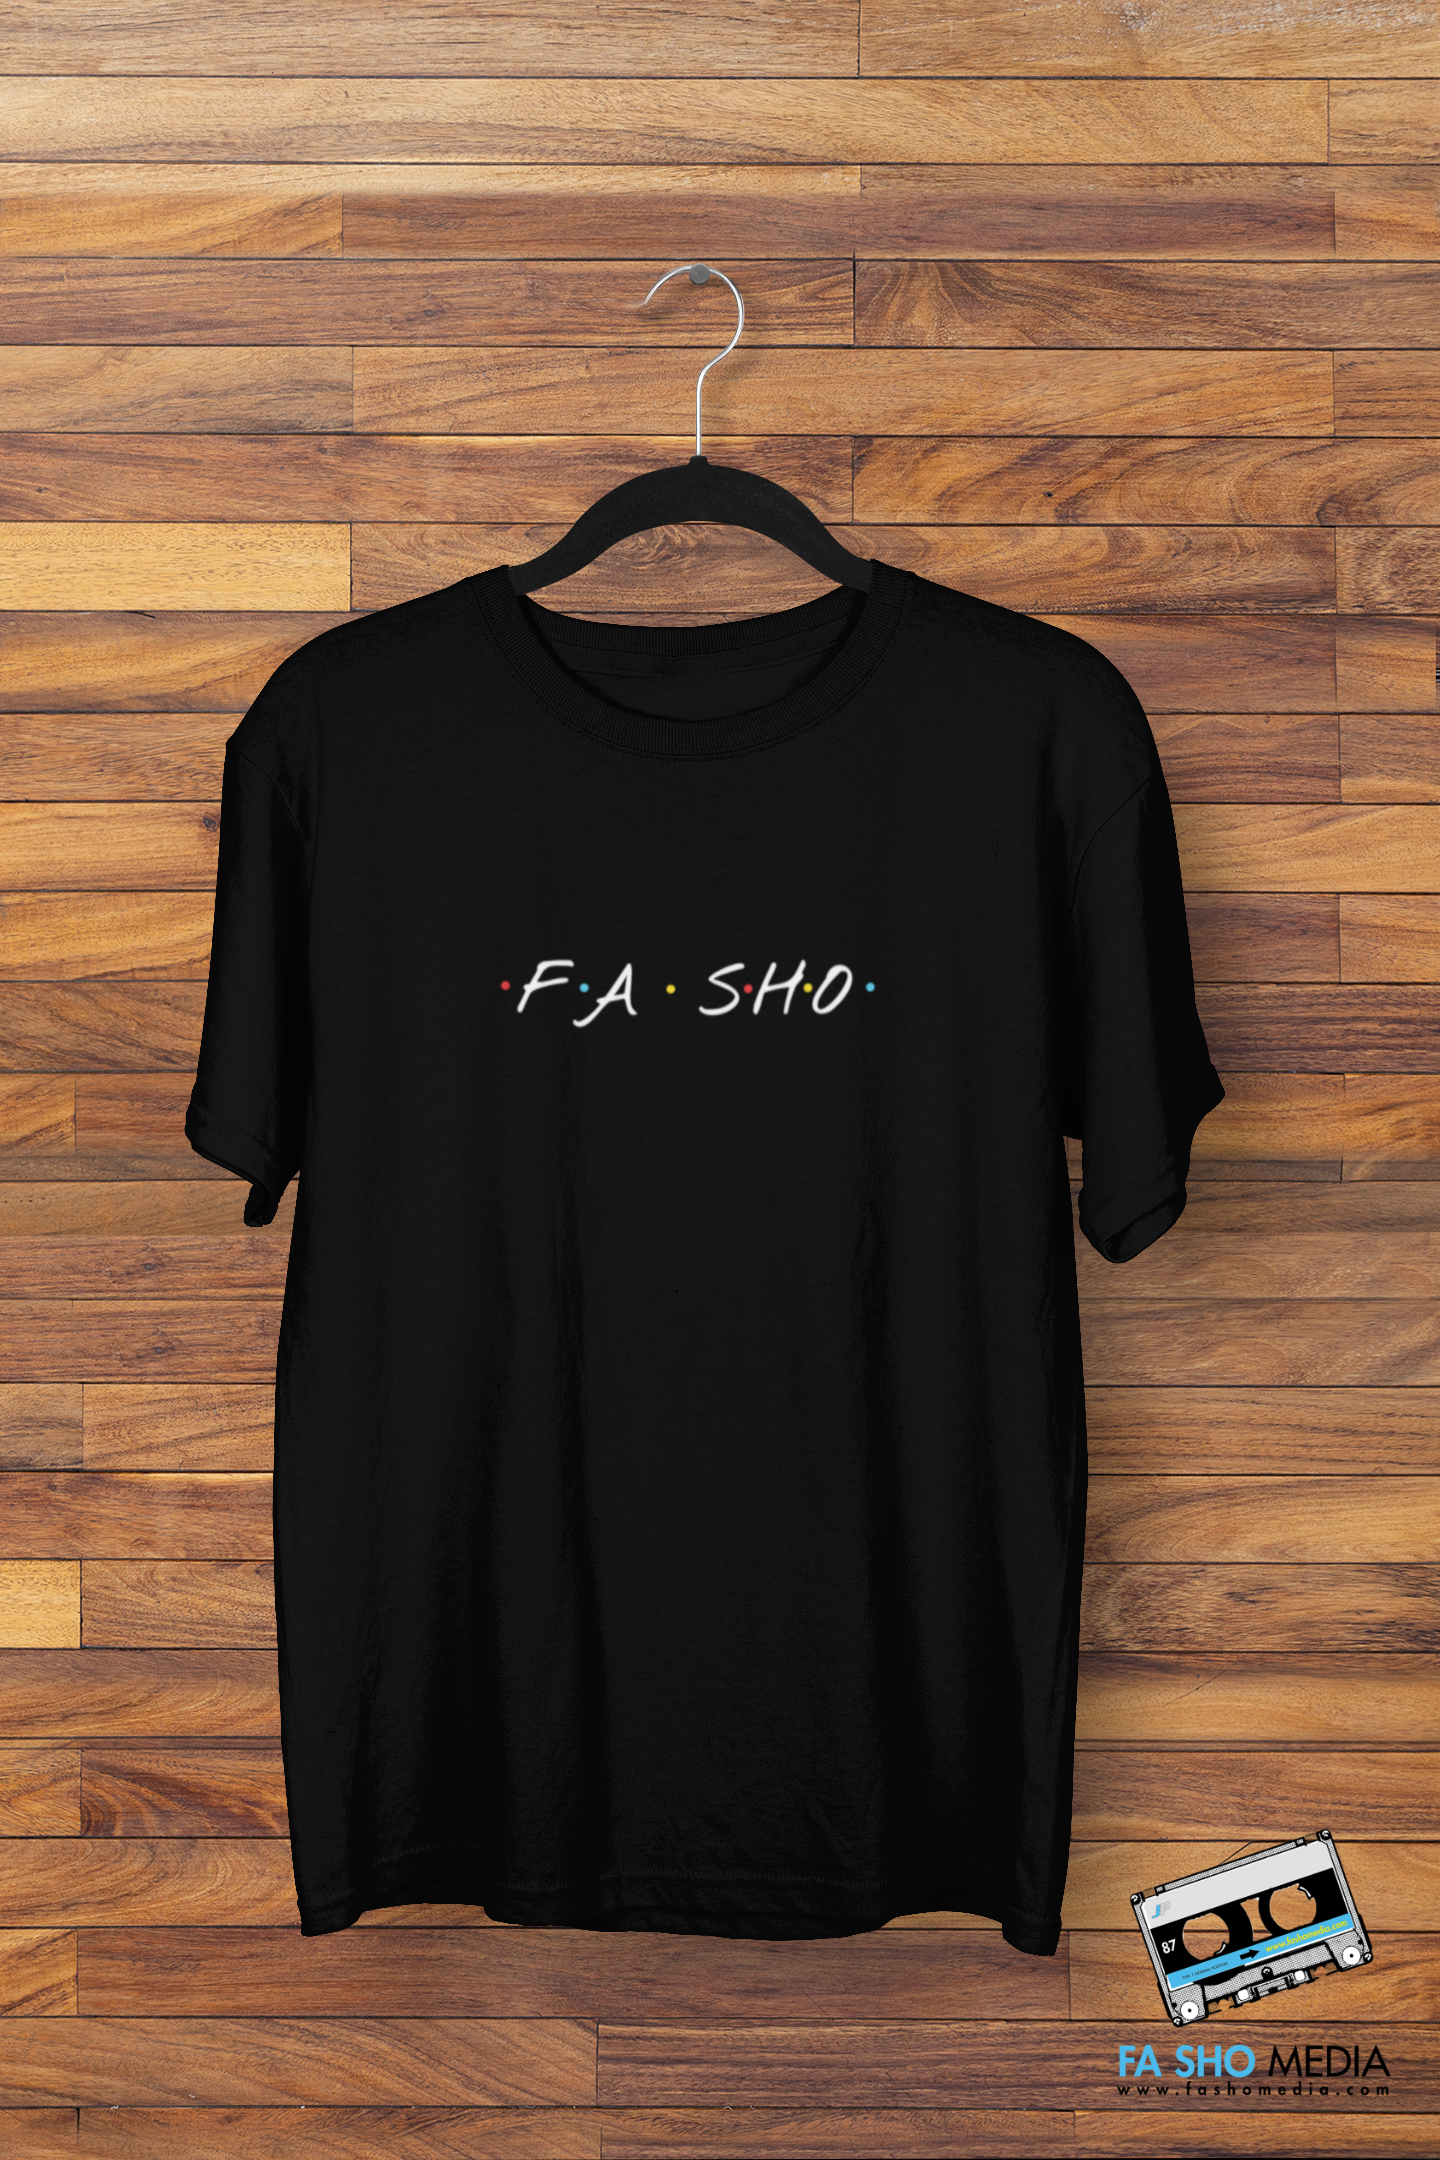 Fa Sho Shirt